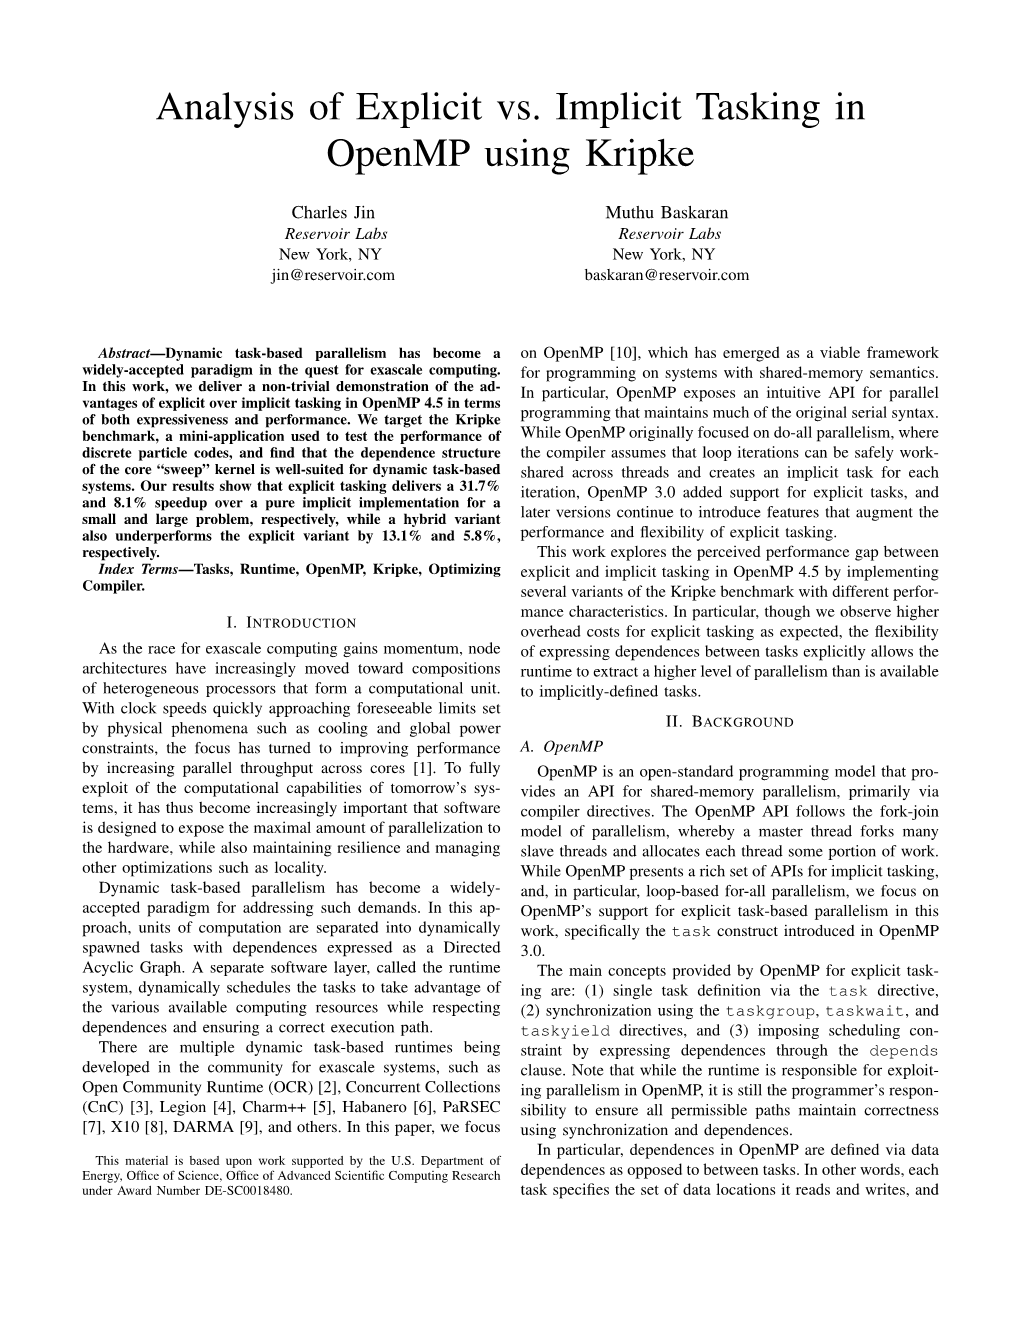 Analysis of Explicit Vs. Implicit Tasking in Openmp Using Kripke